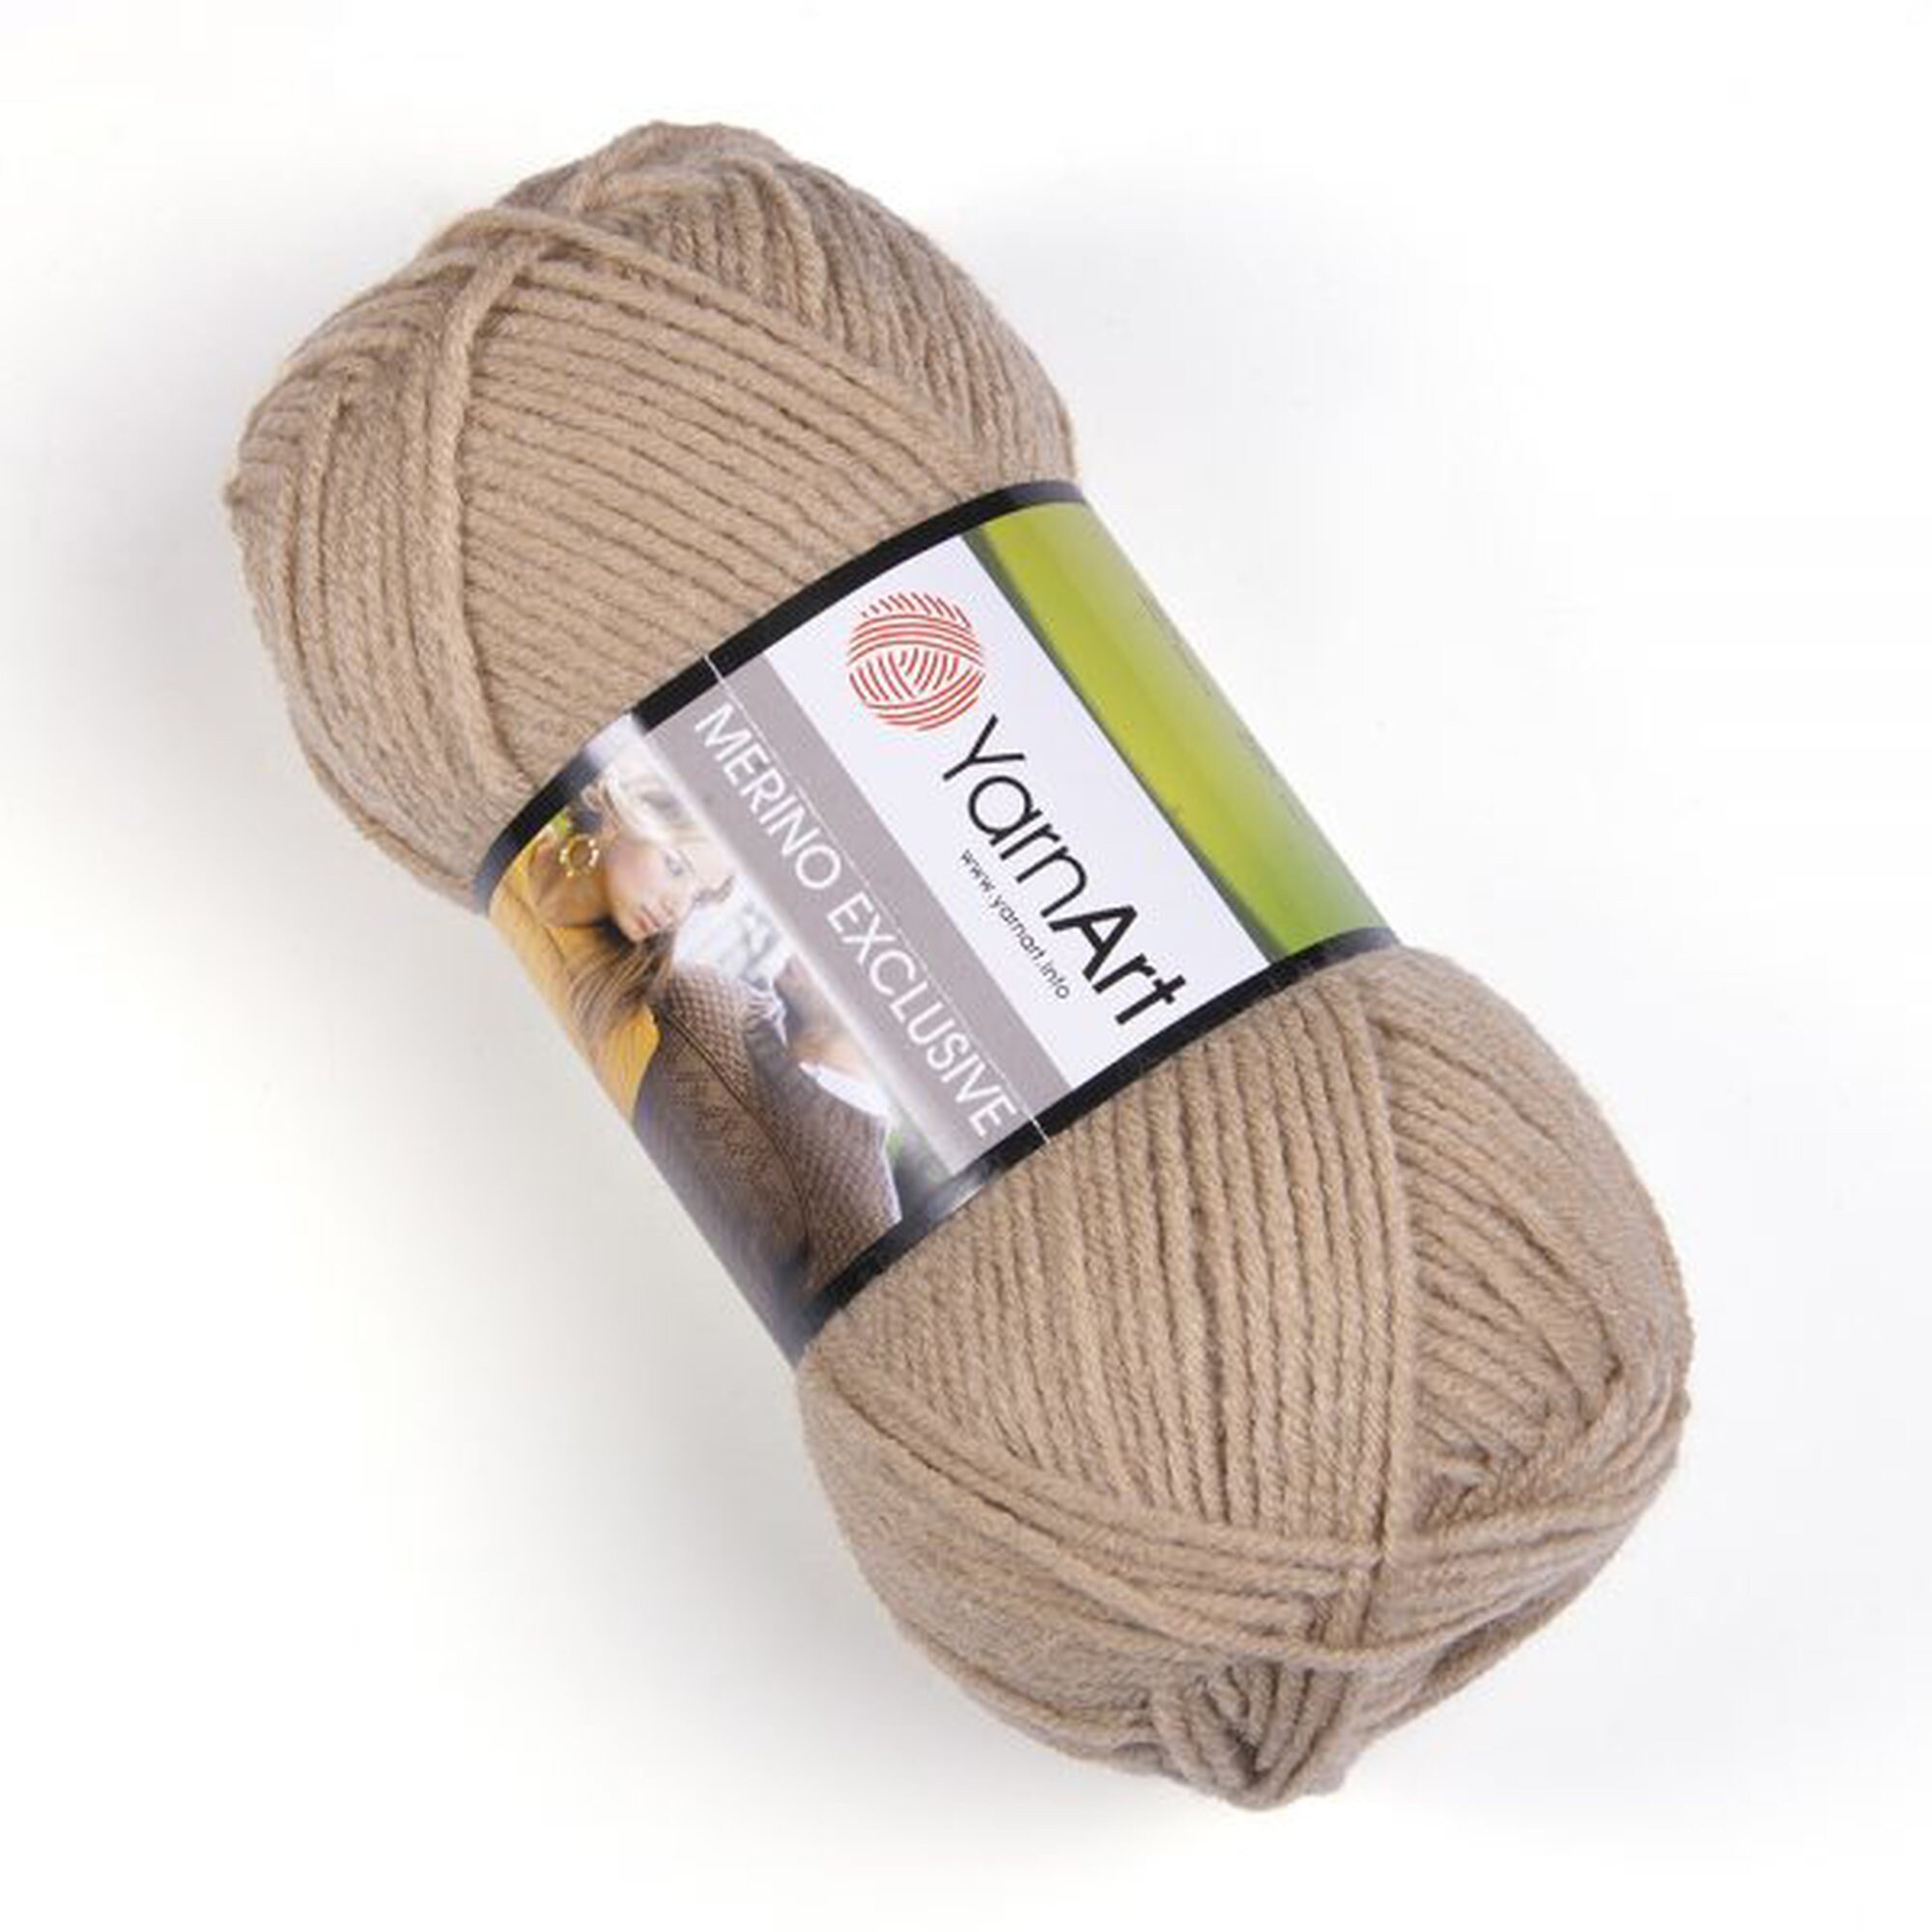 Yarnart Adore Baby Acrylic Yarn Amigurumi-hypoallergenic-knitting-crocheting  Yarn ,100% Anti-pilling Acrylic Soft Yarn 3.52 Oz 306.21 Y 